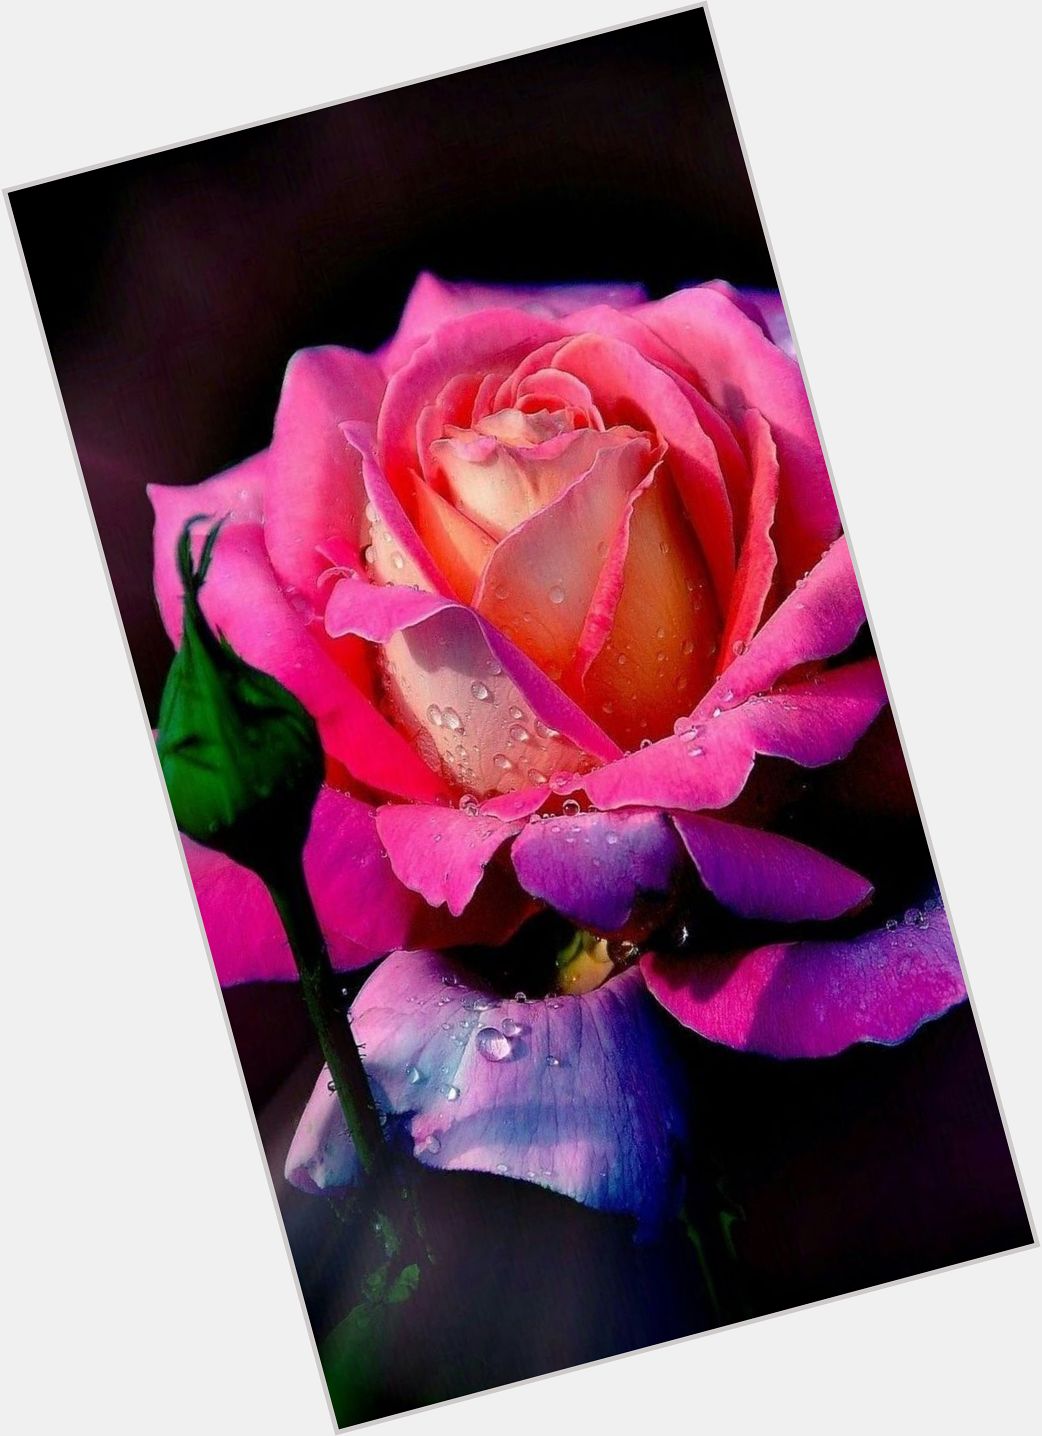 Fleur Rose dating 2.jpg